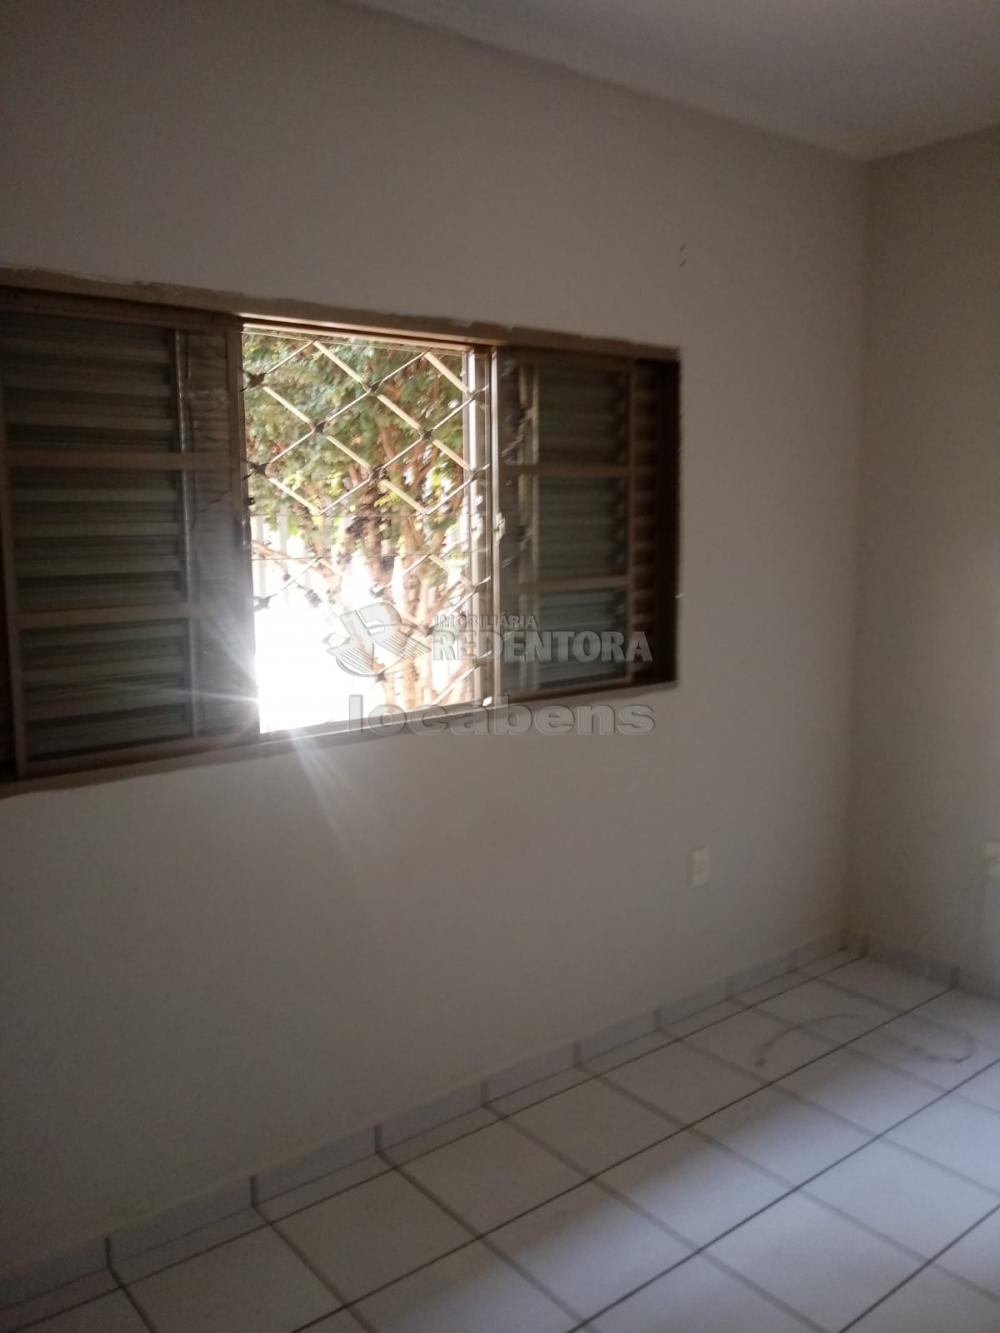 Comprar Casa / Padrão em São José do Rio Preto apenas R$ 320.000,00 - Foto 8